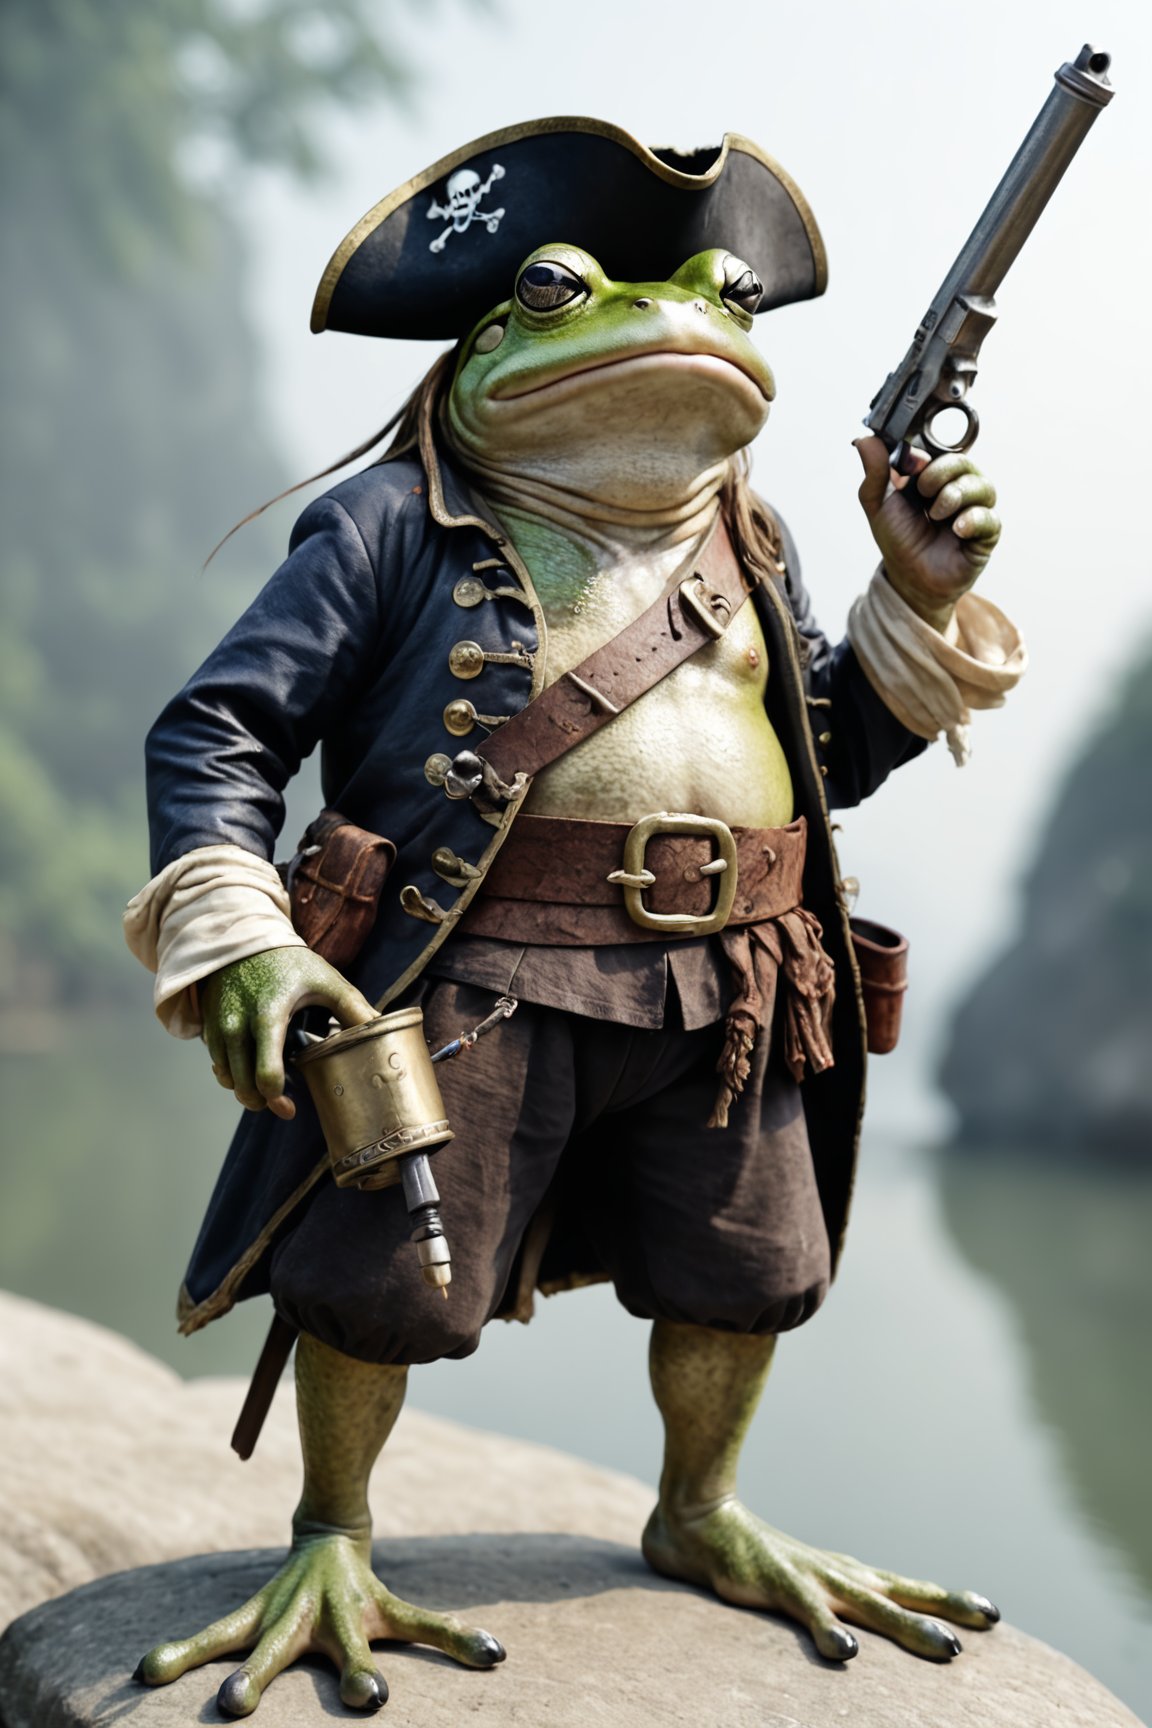 photo, a pirate frog, asian_mythology, holding a flint lock pistol 